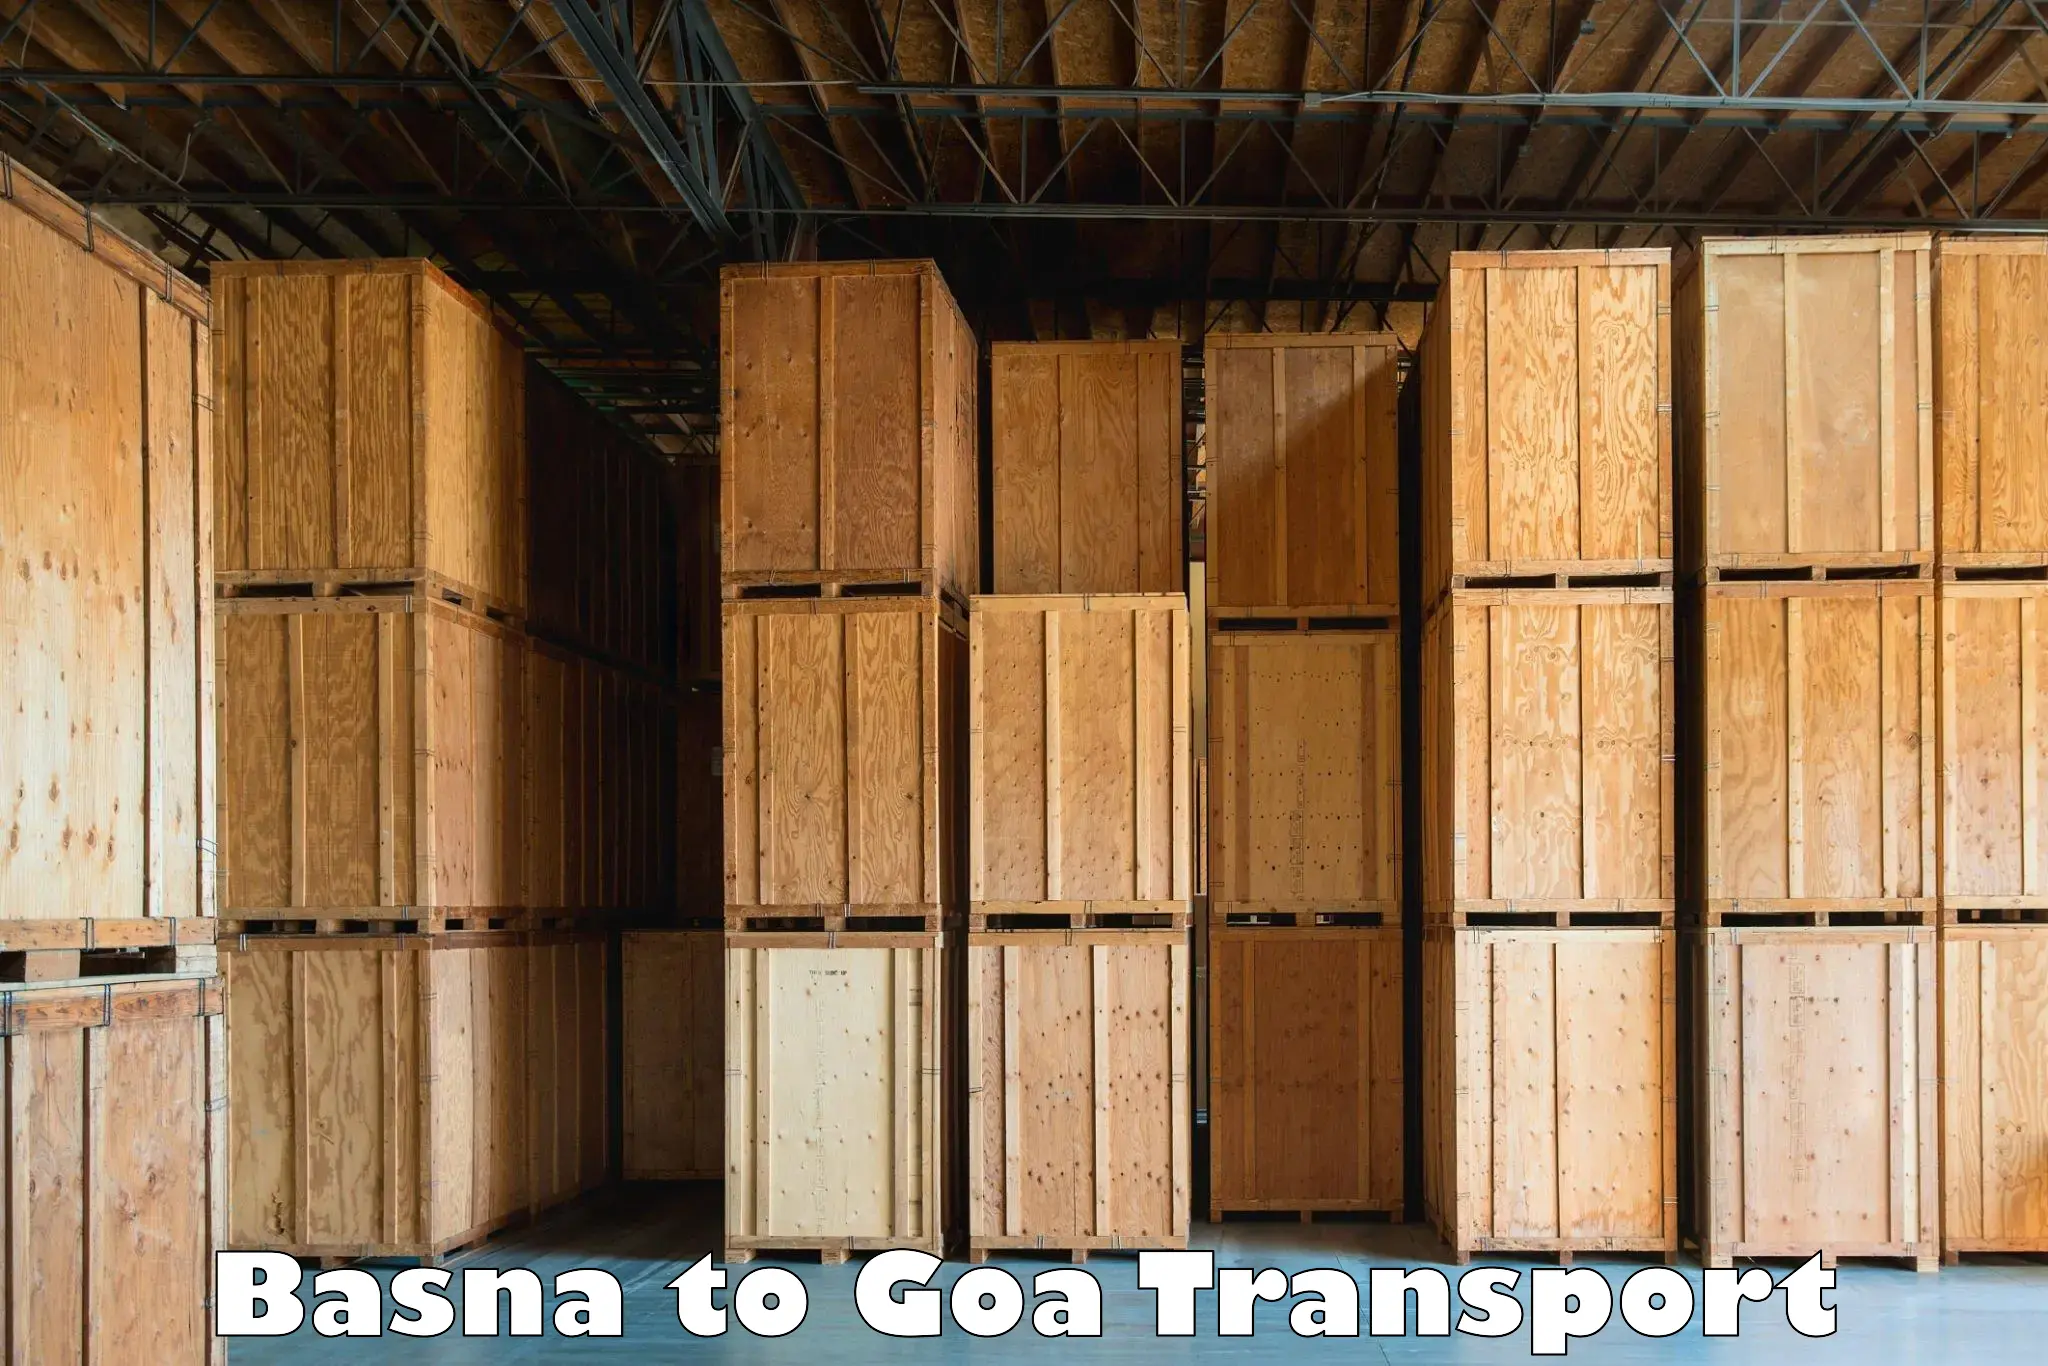 Daily transport service in Basna to Vasco da Gama